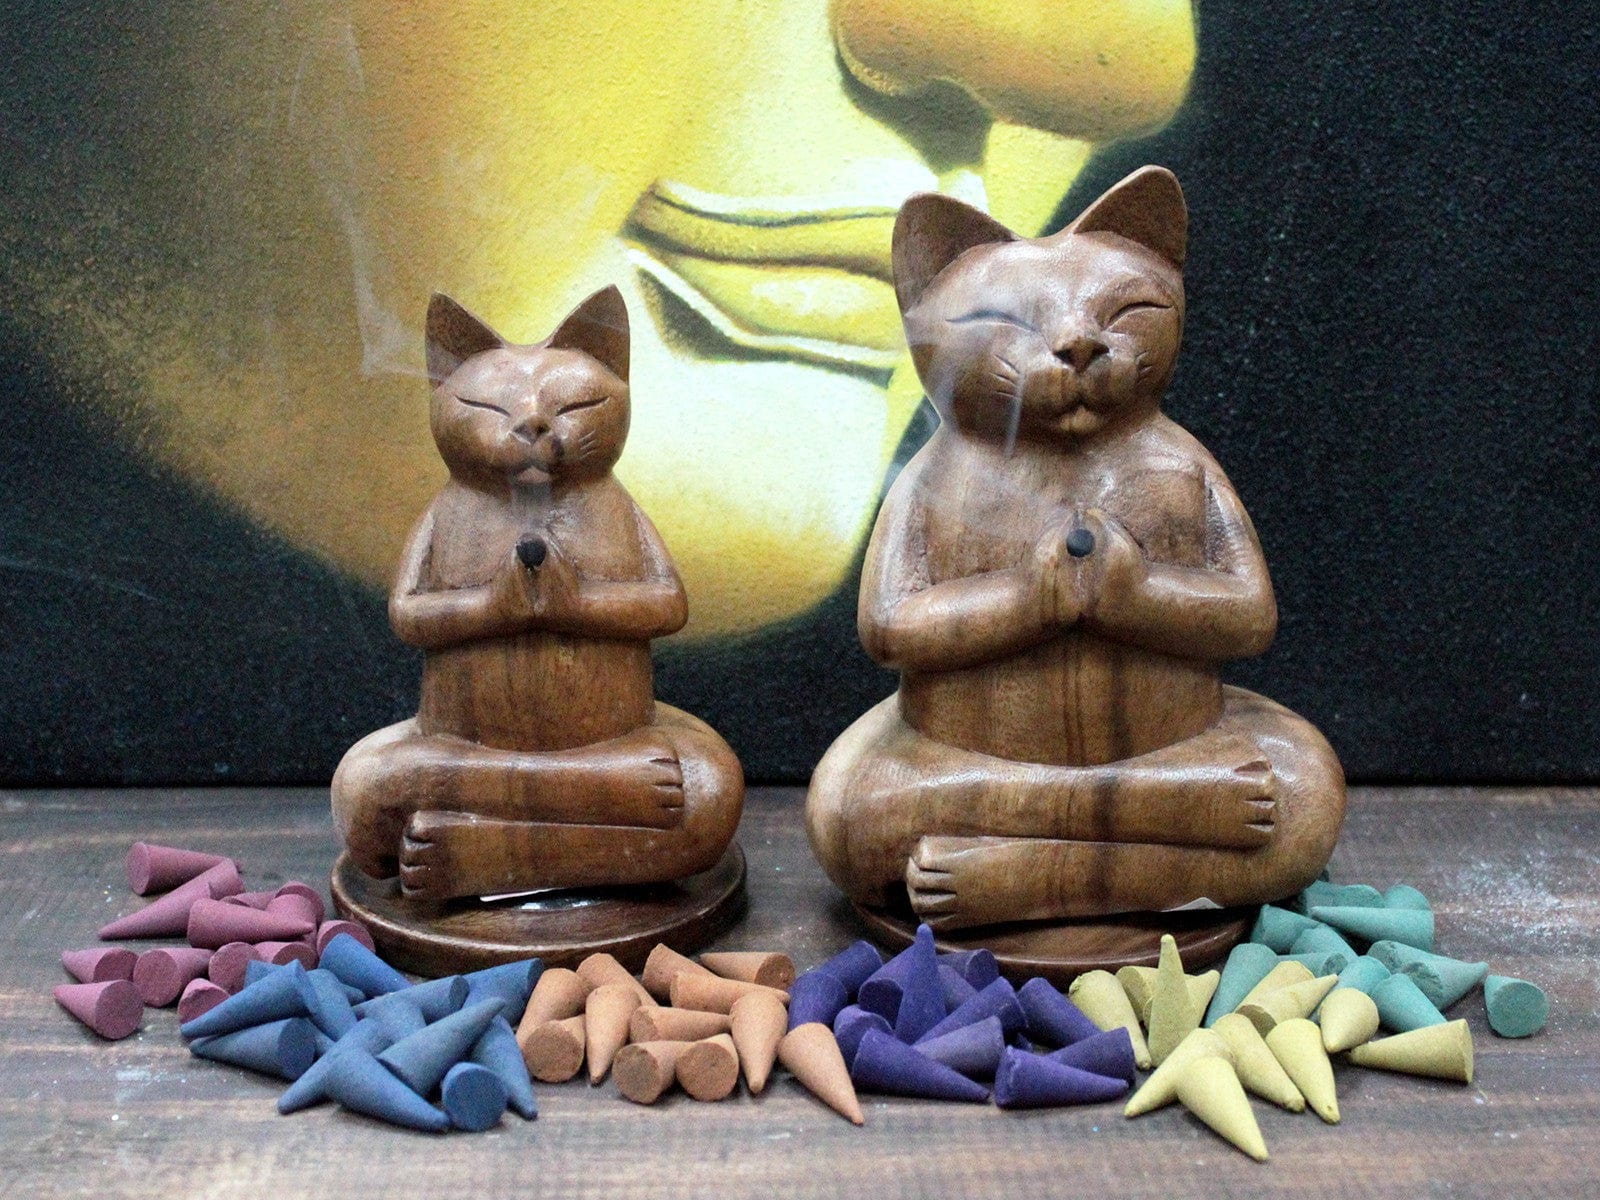 Wooden Carved Incense Burners - Med Yoga Cat - Kaftans direct